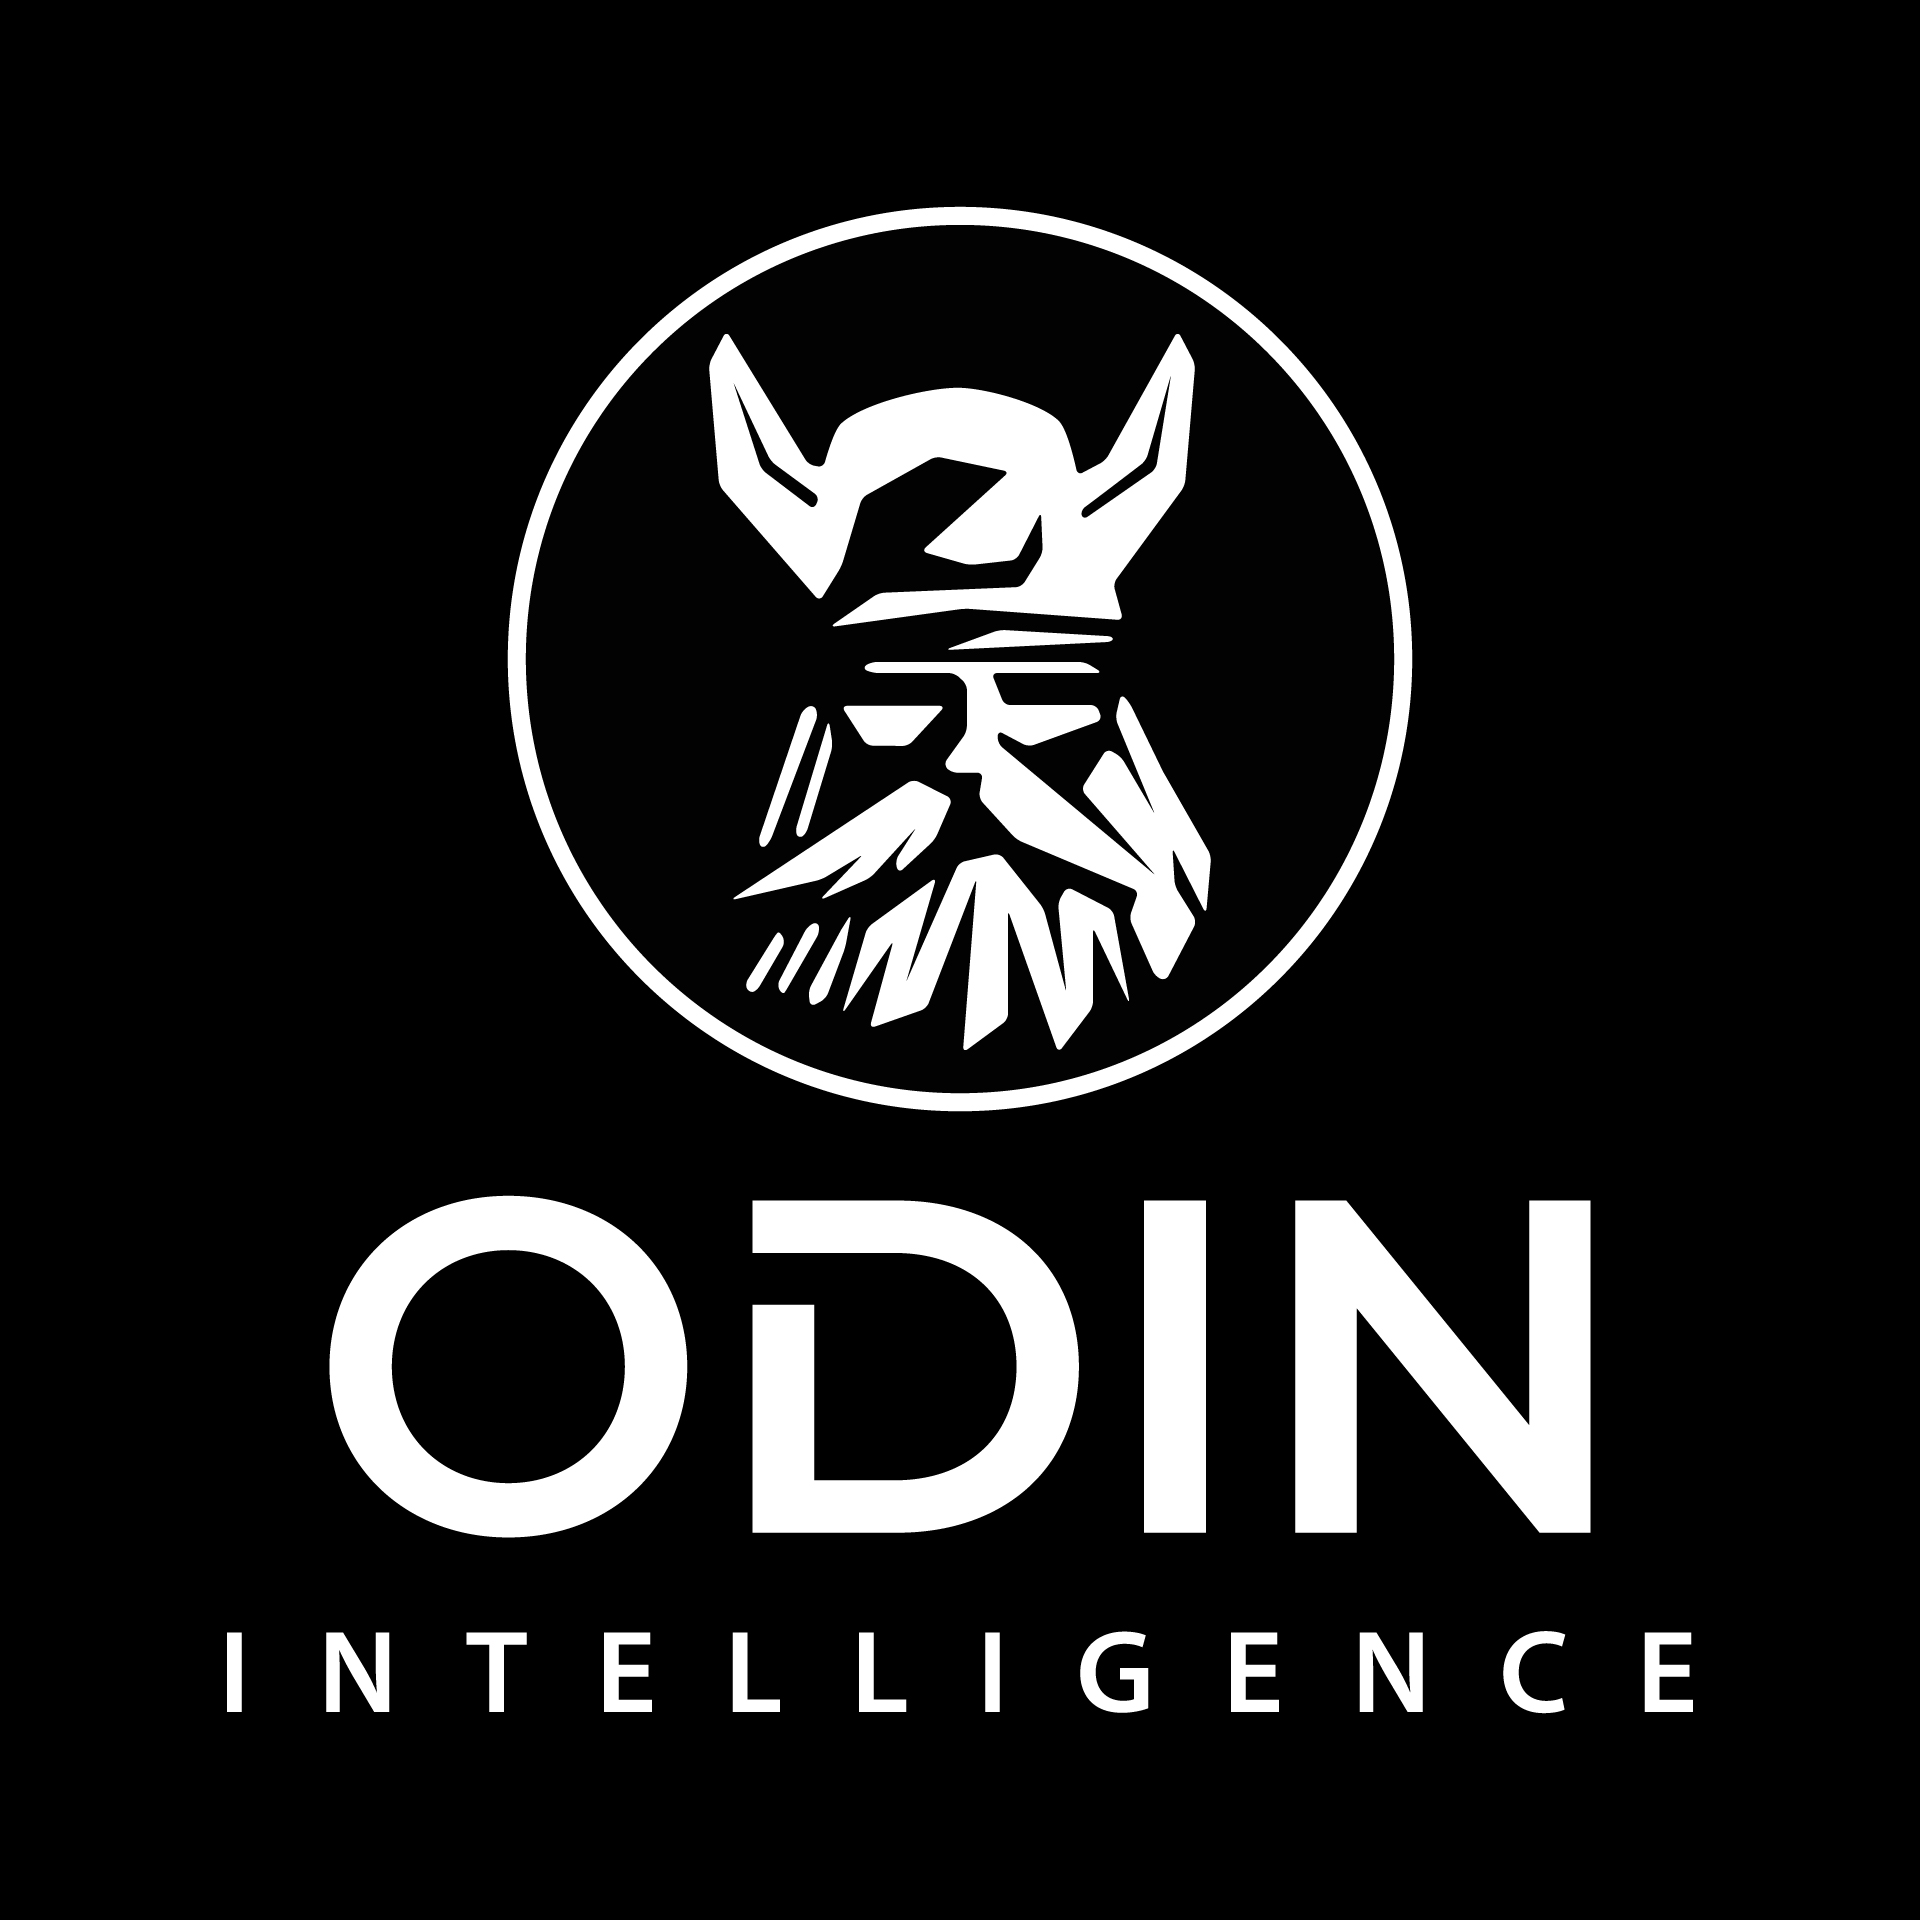 ODIN-logo-black1.jpg